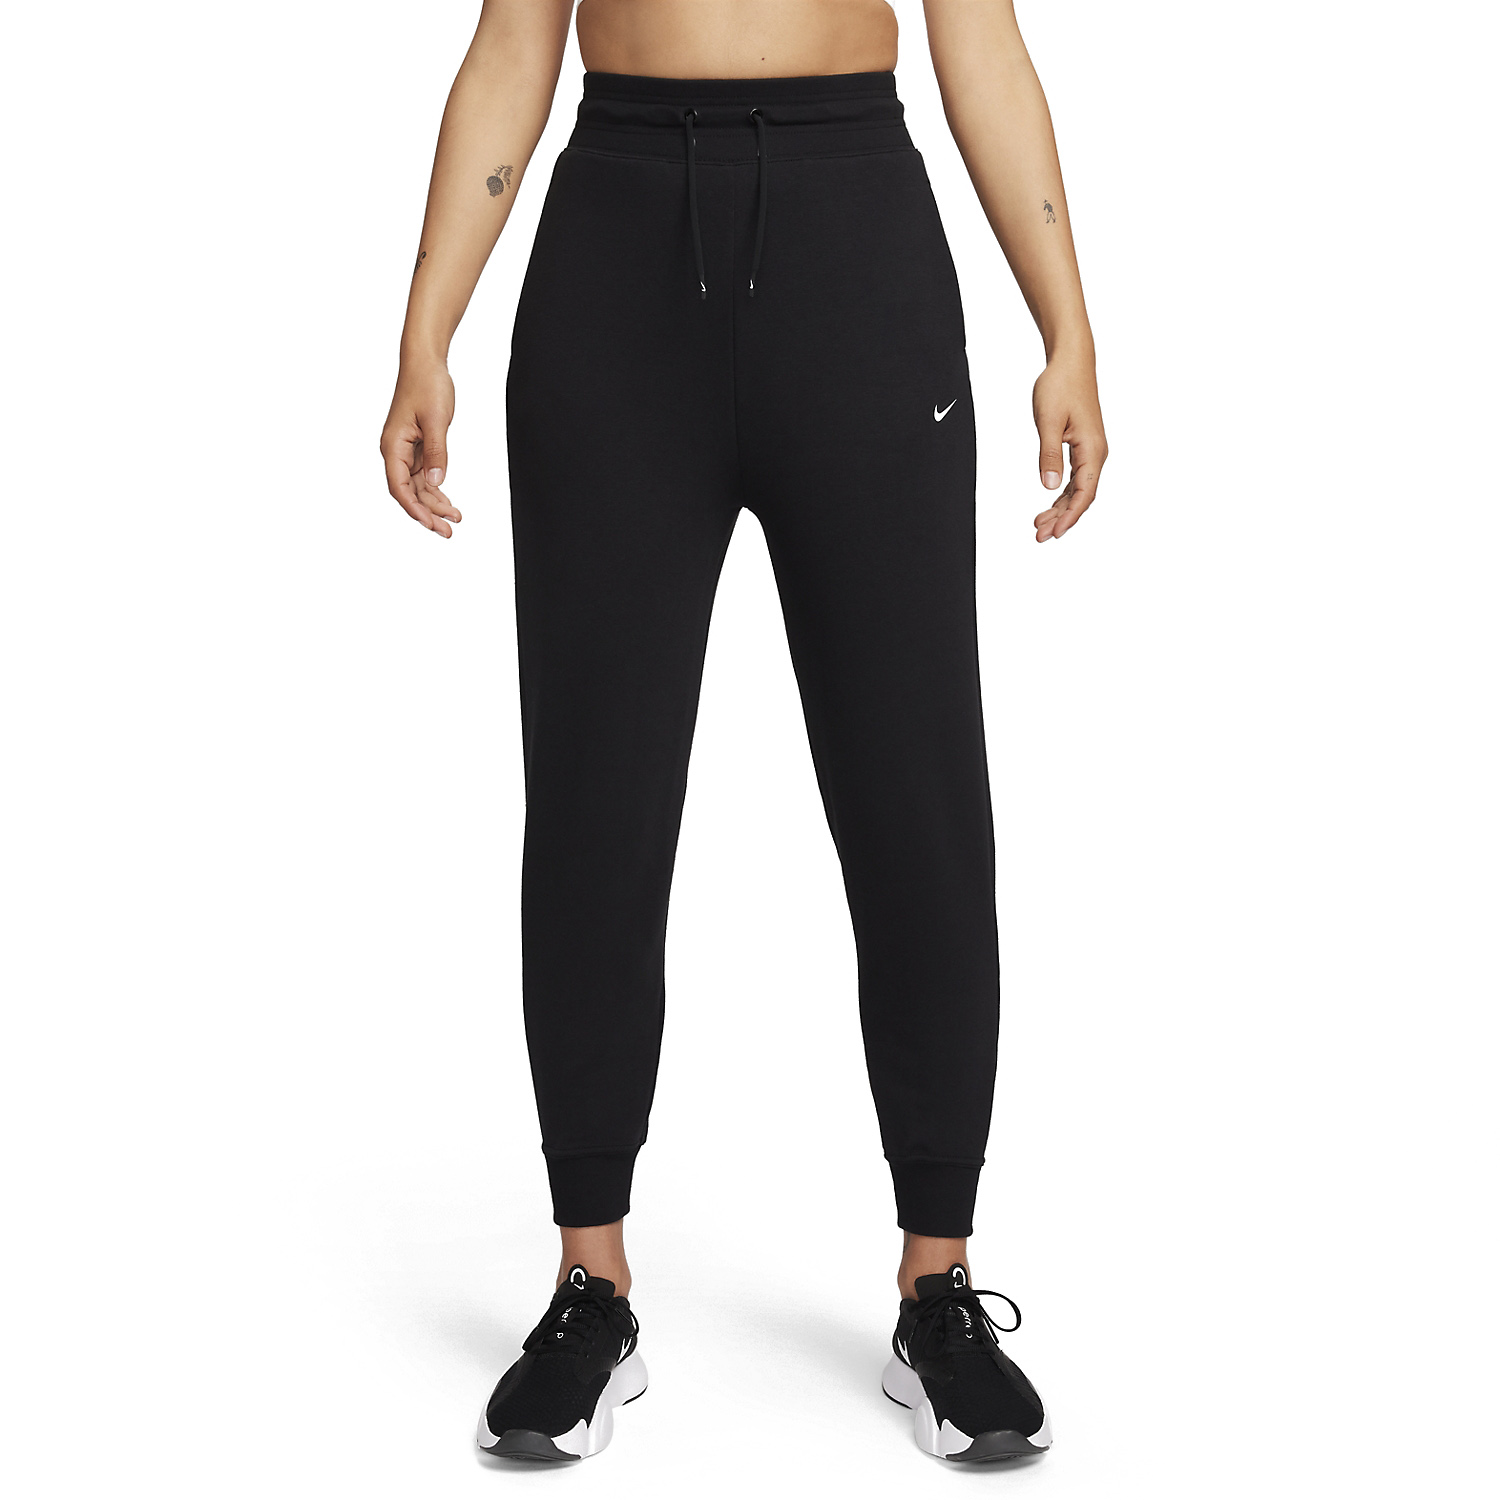 Nike Dri-FIT One Pantaloni - Black/White